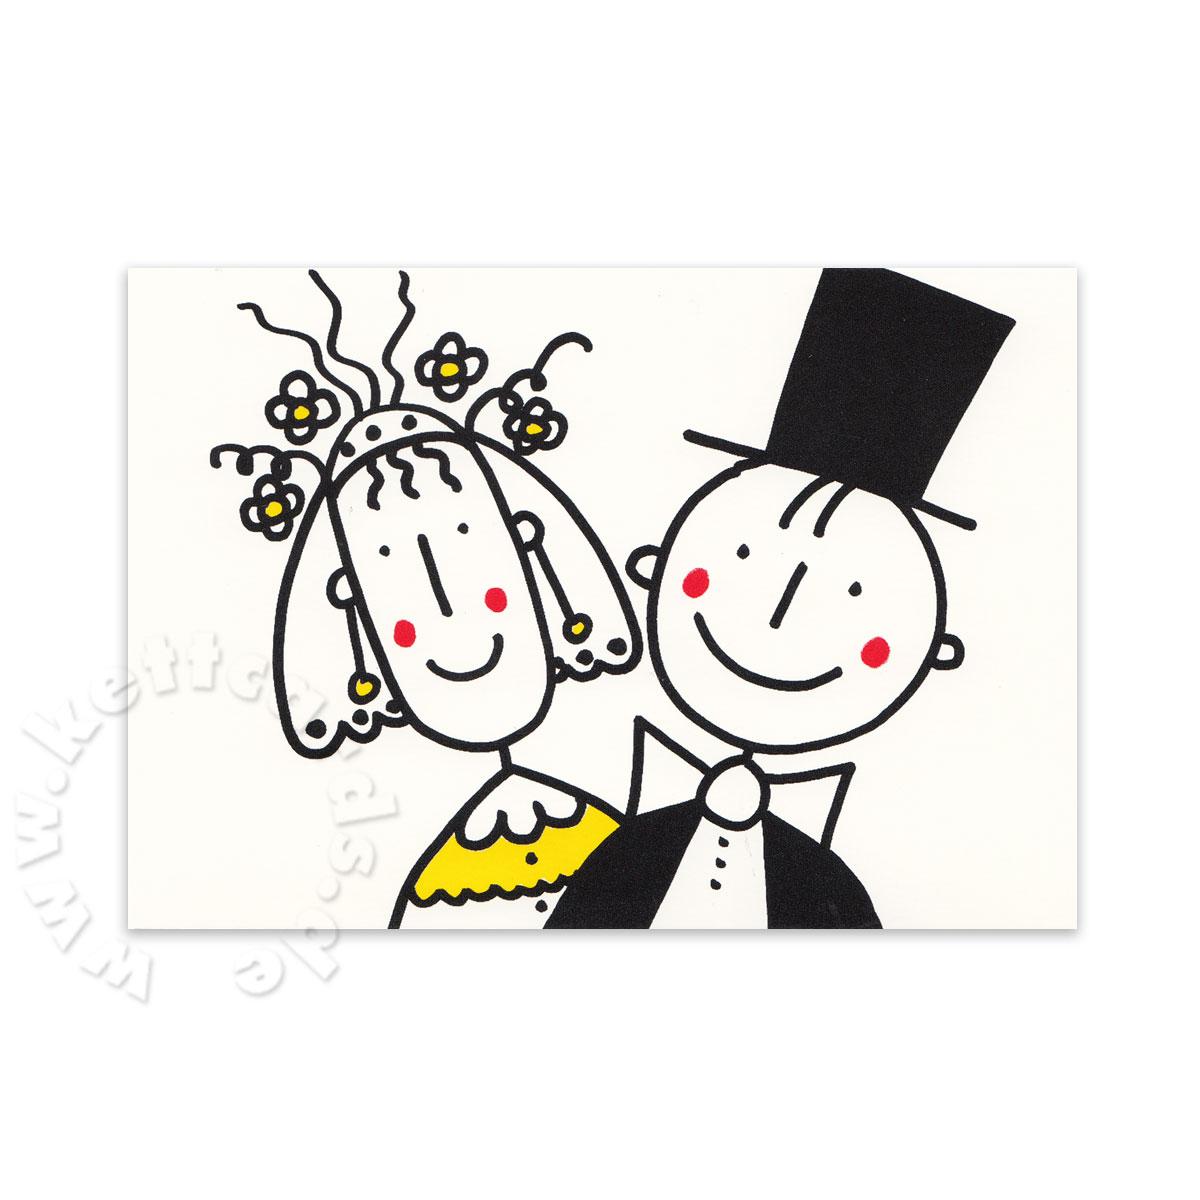 Postkarte für die Hochzeit: fröhliches Brautpaar